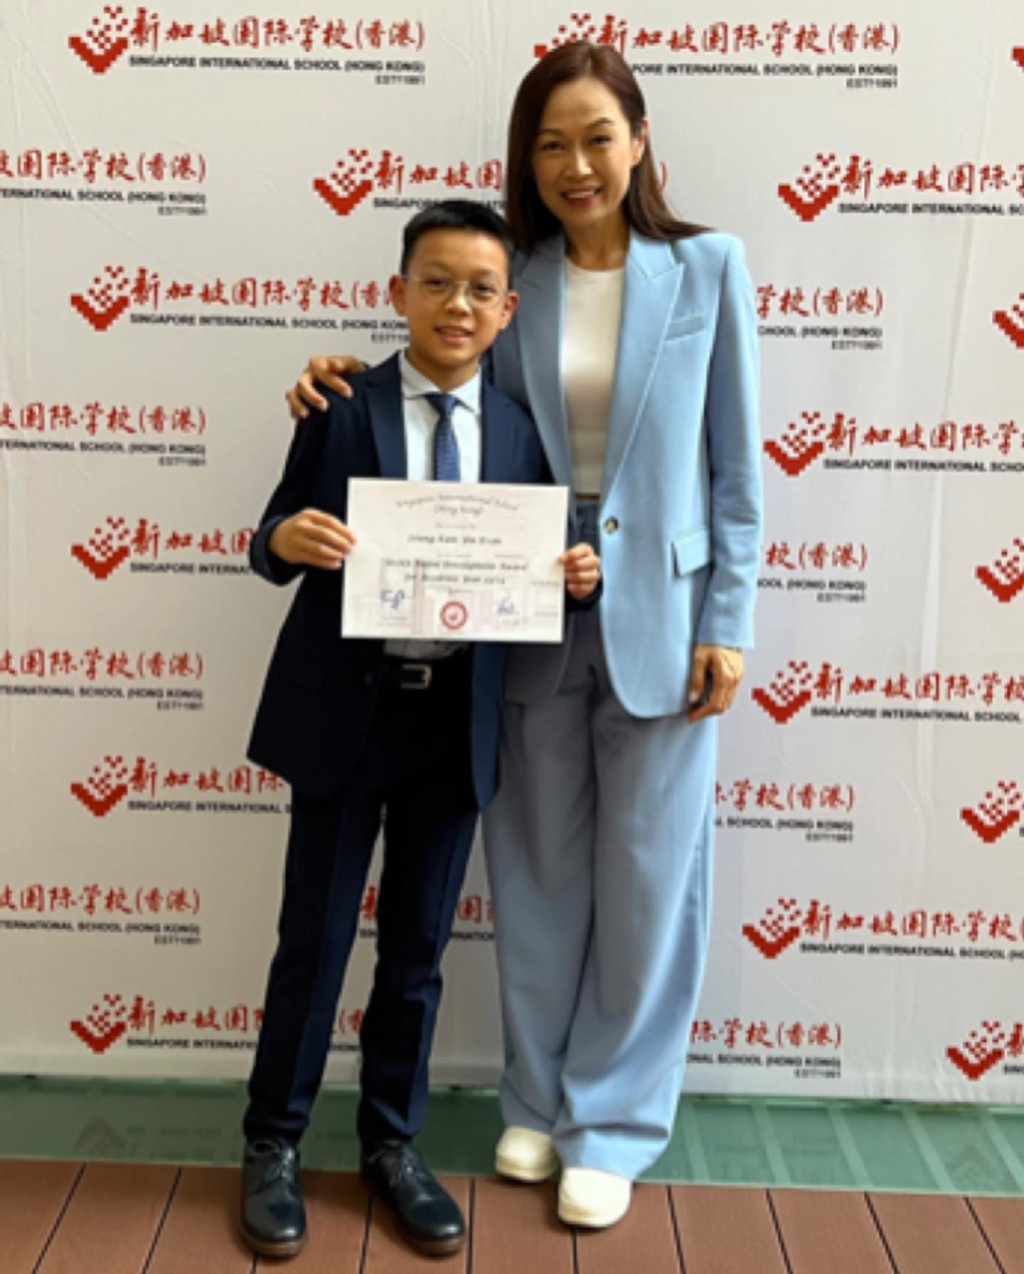 姚莹莹对儿子屡获奖感到骄傲。